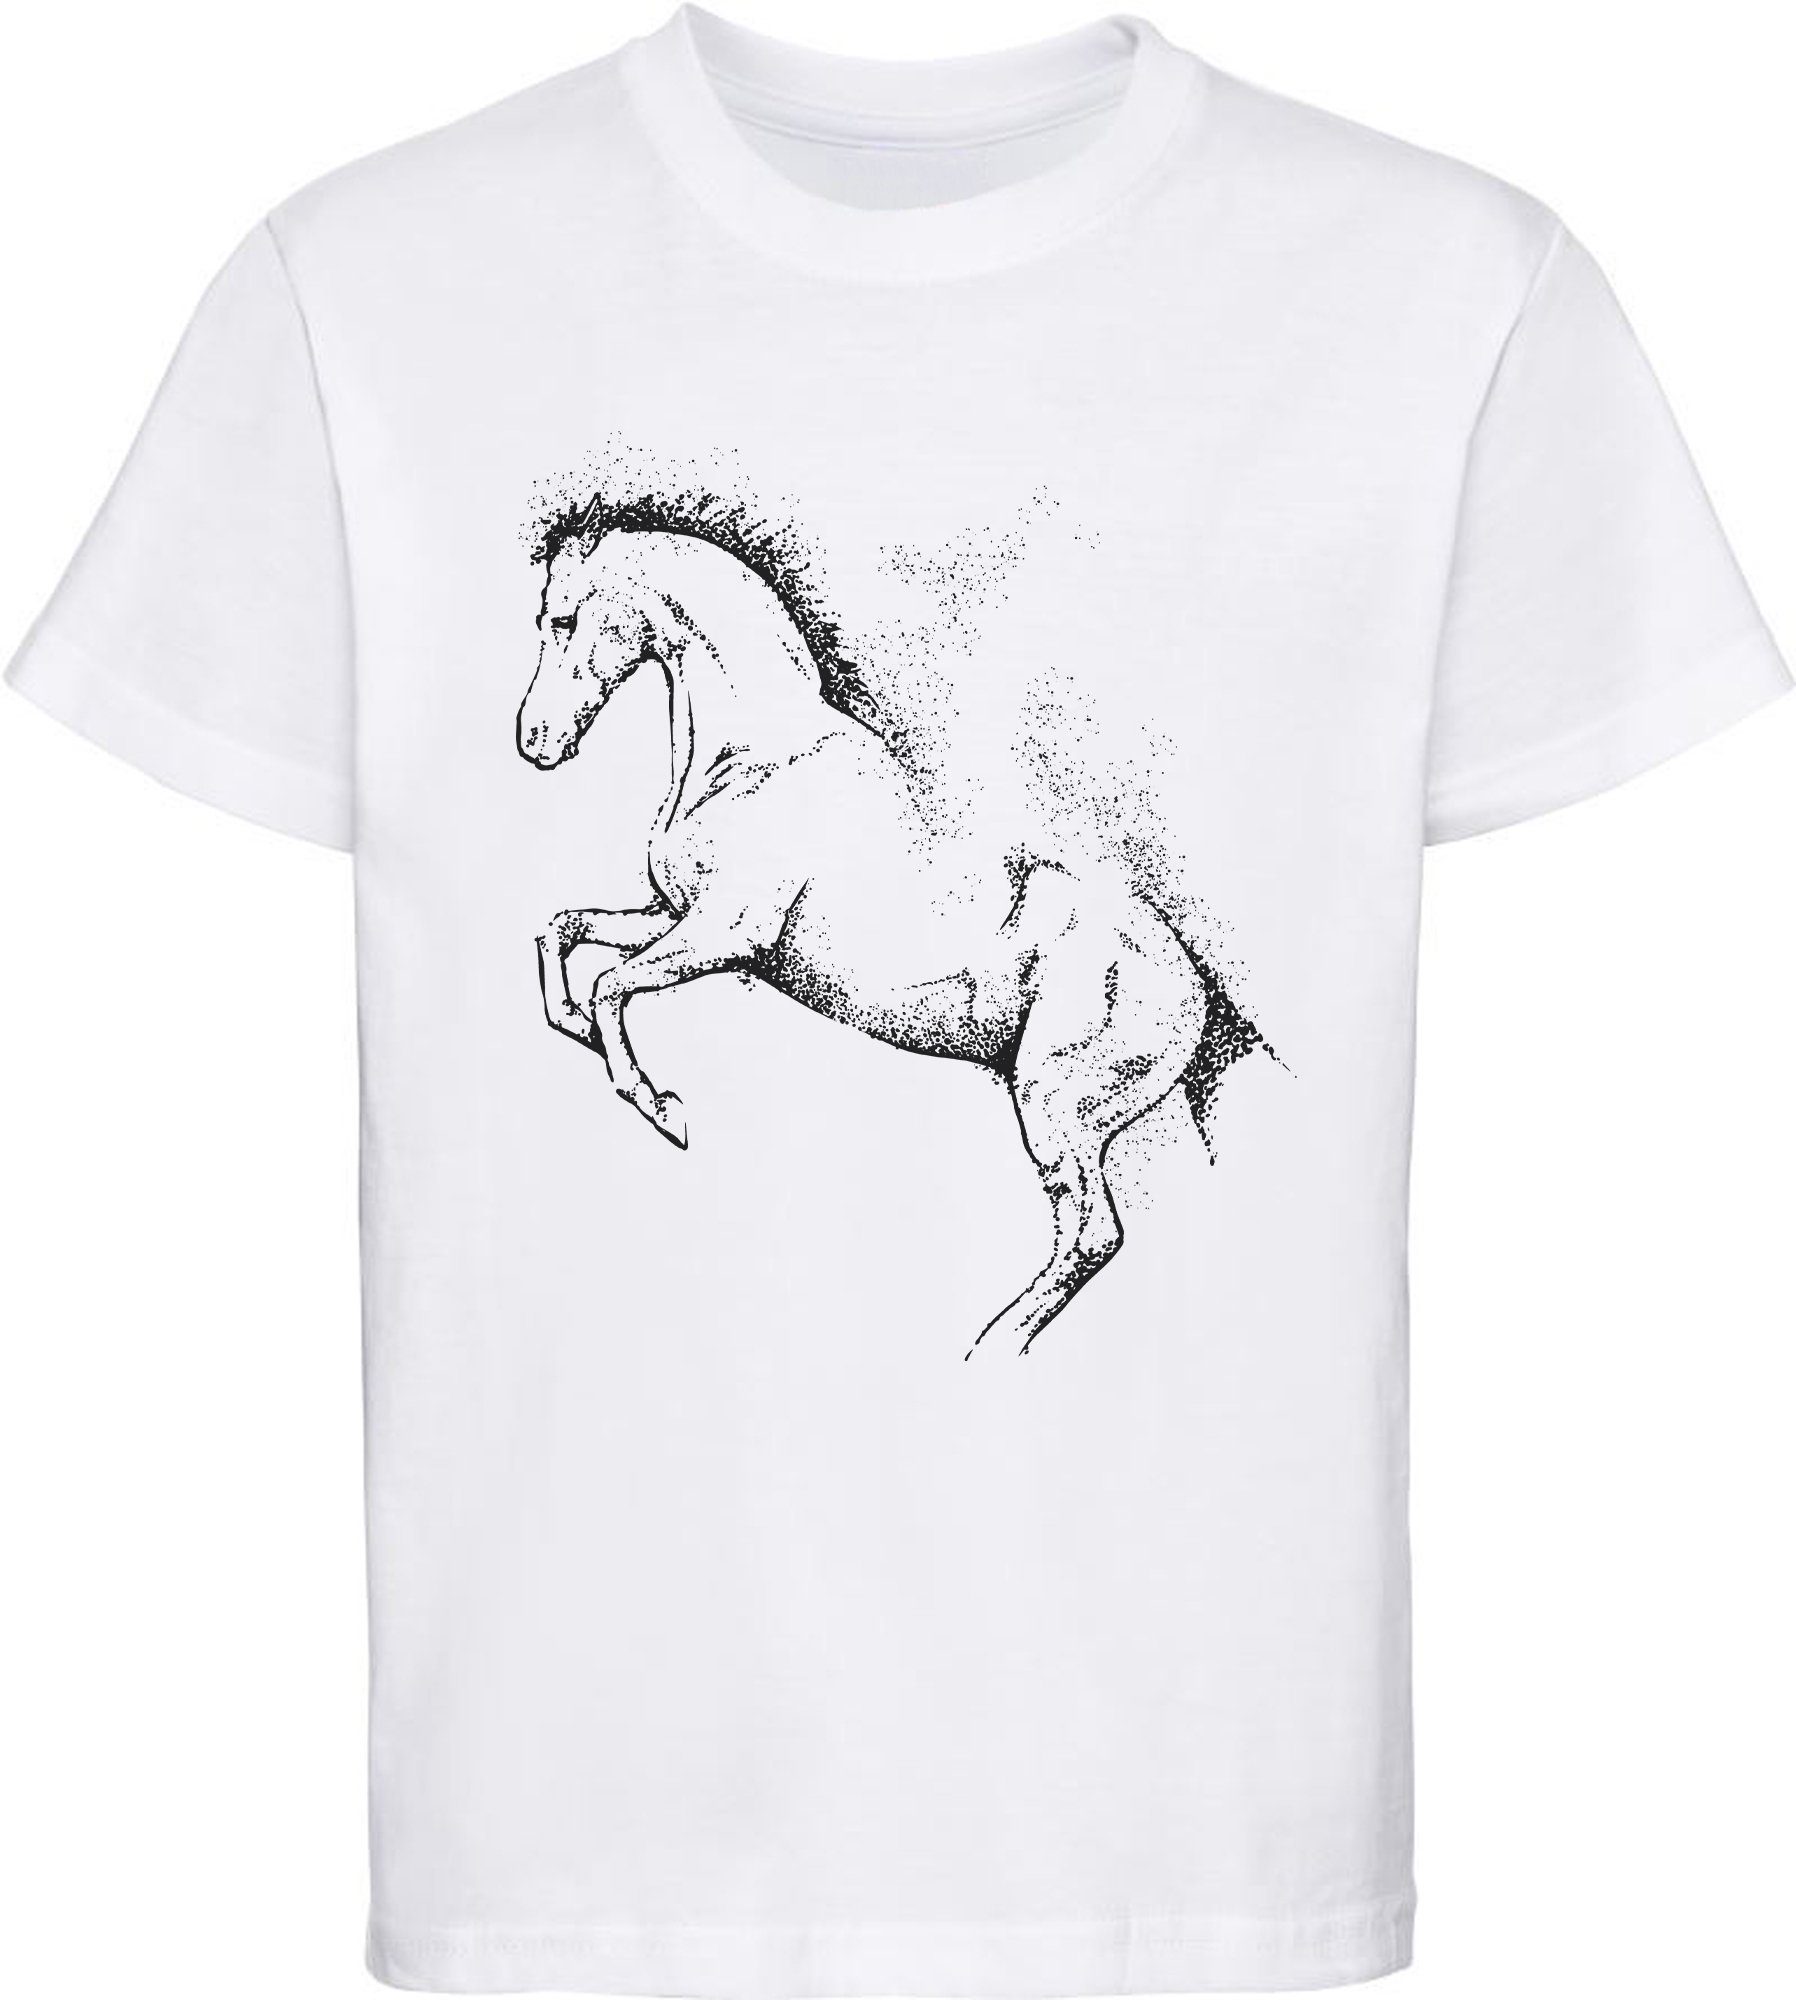 MyDesign24 Print-Shirt bedrucktes Kinder Mädchen T-Shirt - Gepunktete Pferde Silhouette Baumwollshirt mit Aufdruck, i196 weiss